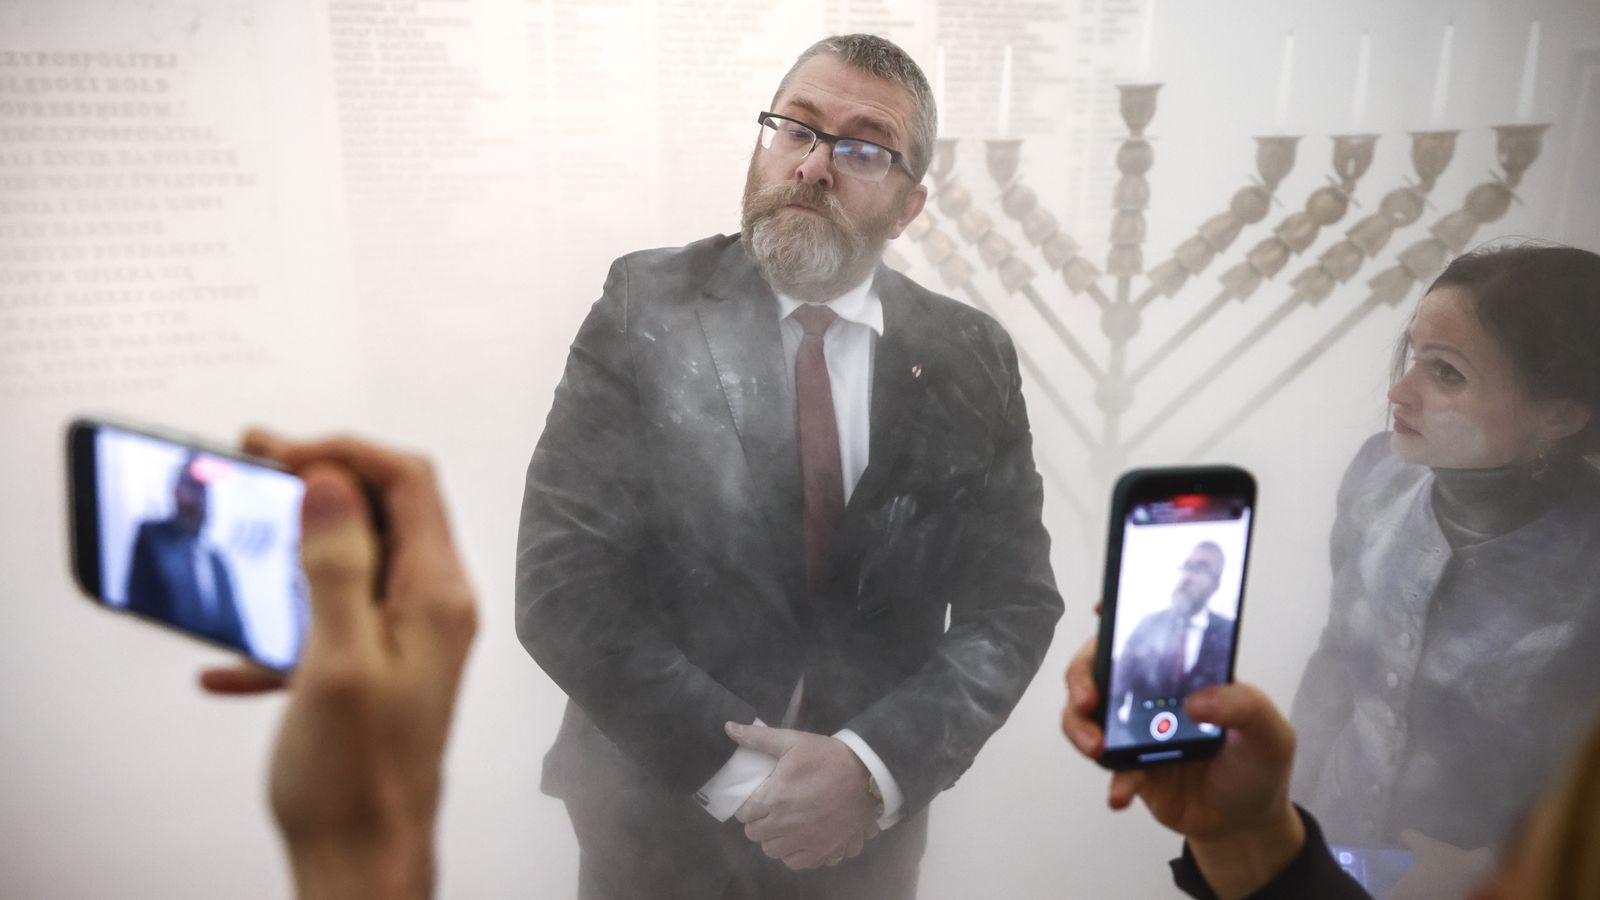 Rechtsextremer polnischer Politiker benutzt im Parlament einen Feuerlöscher gegen Chanukka-Kerzen |  Weltnachrichten